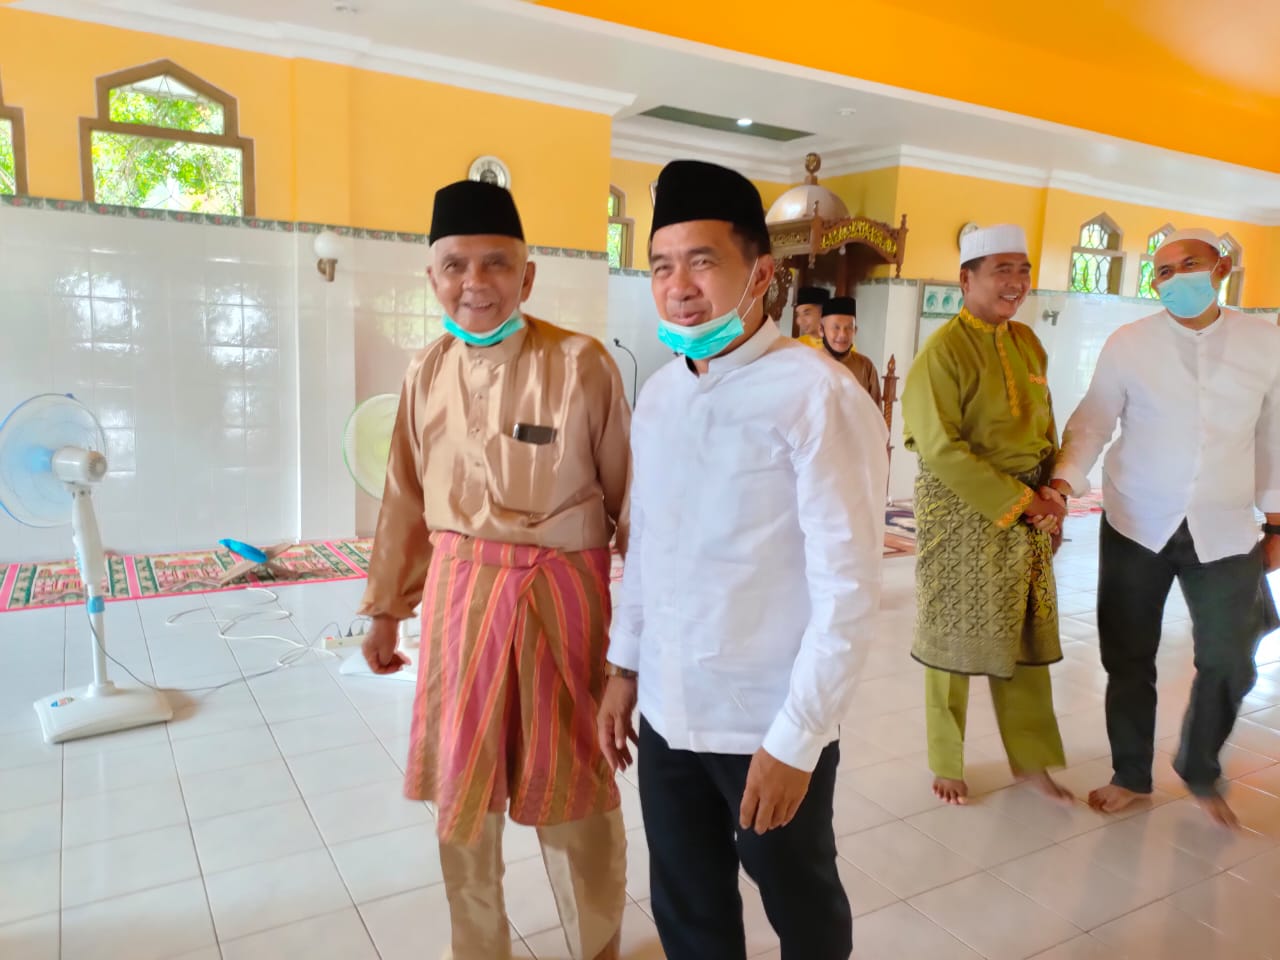 KAGET...! Ketua LAMR Kecamatan Mandah Tak Menyangka Dapat Kunjungan Dari Ketua MKA LAMR Inhil